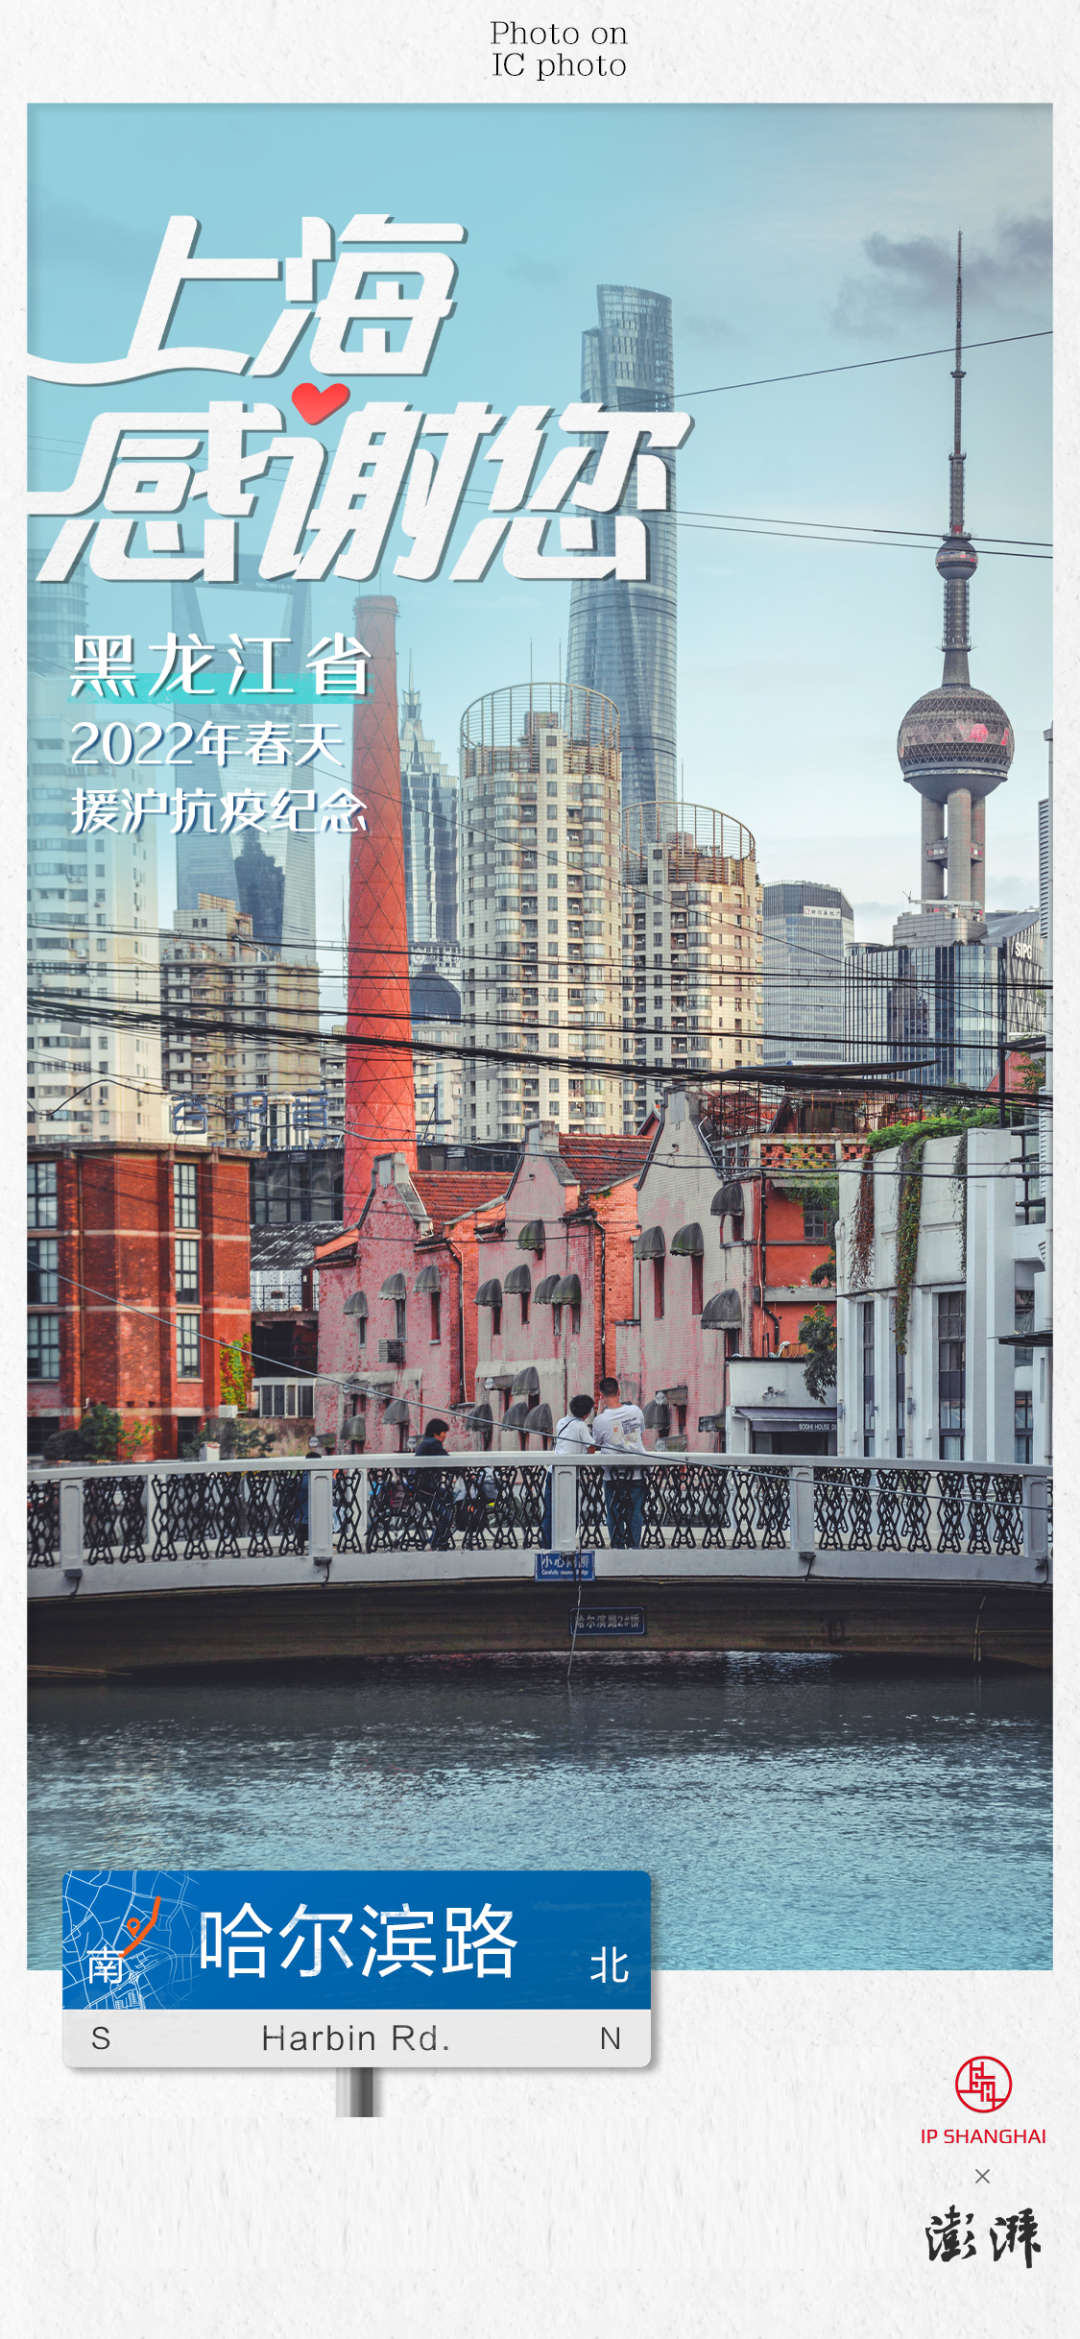 资料：澎湃新闻（记者：赵冠群、宋一宁、薛晶、施佳慧）、上海城市形象资源共享平台（IP SHANGHAI）